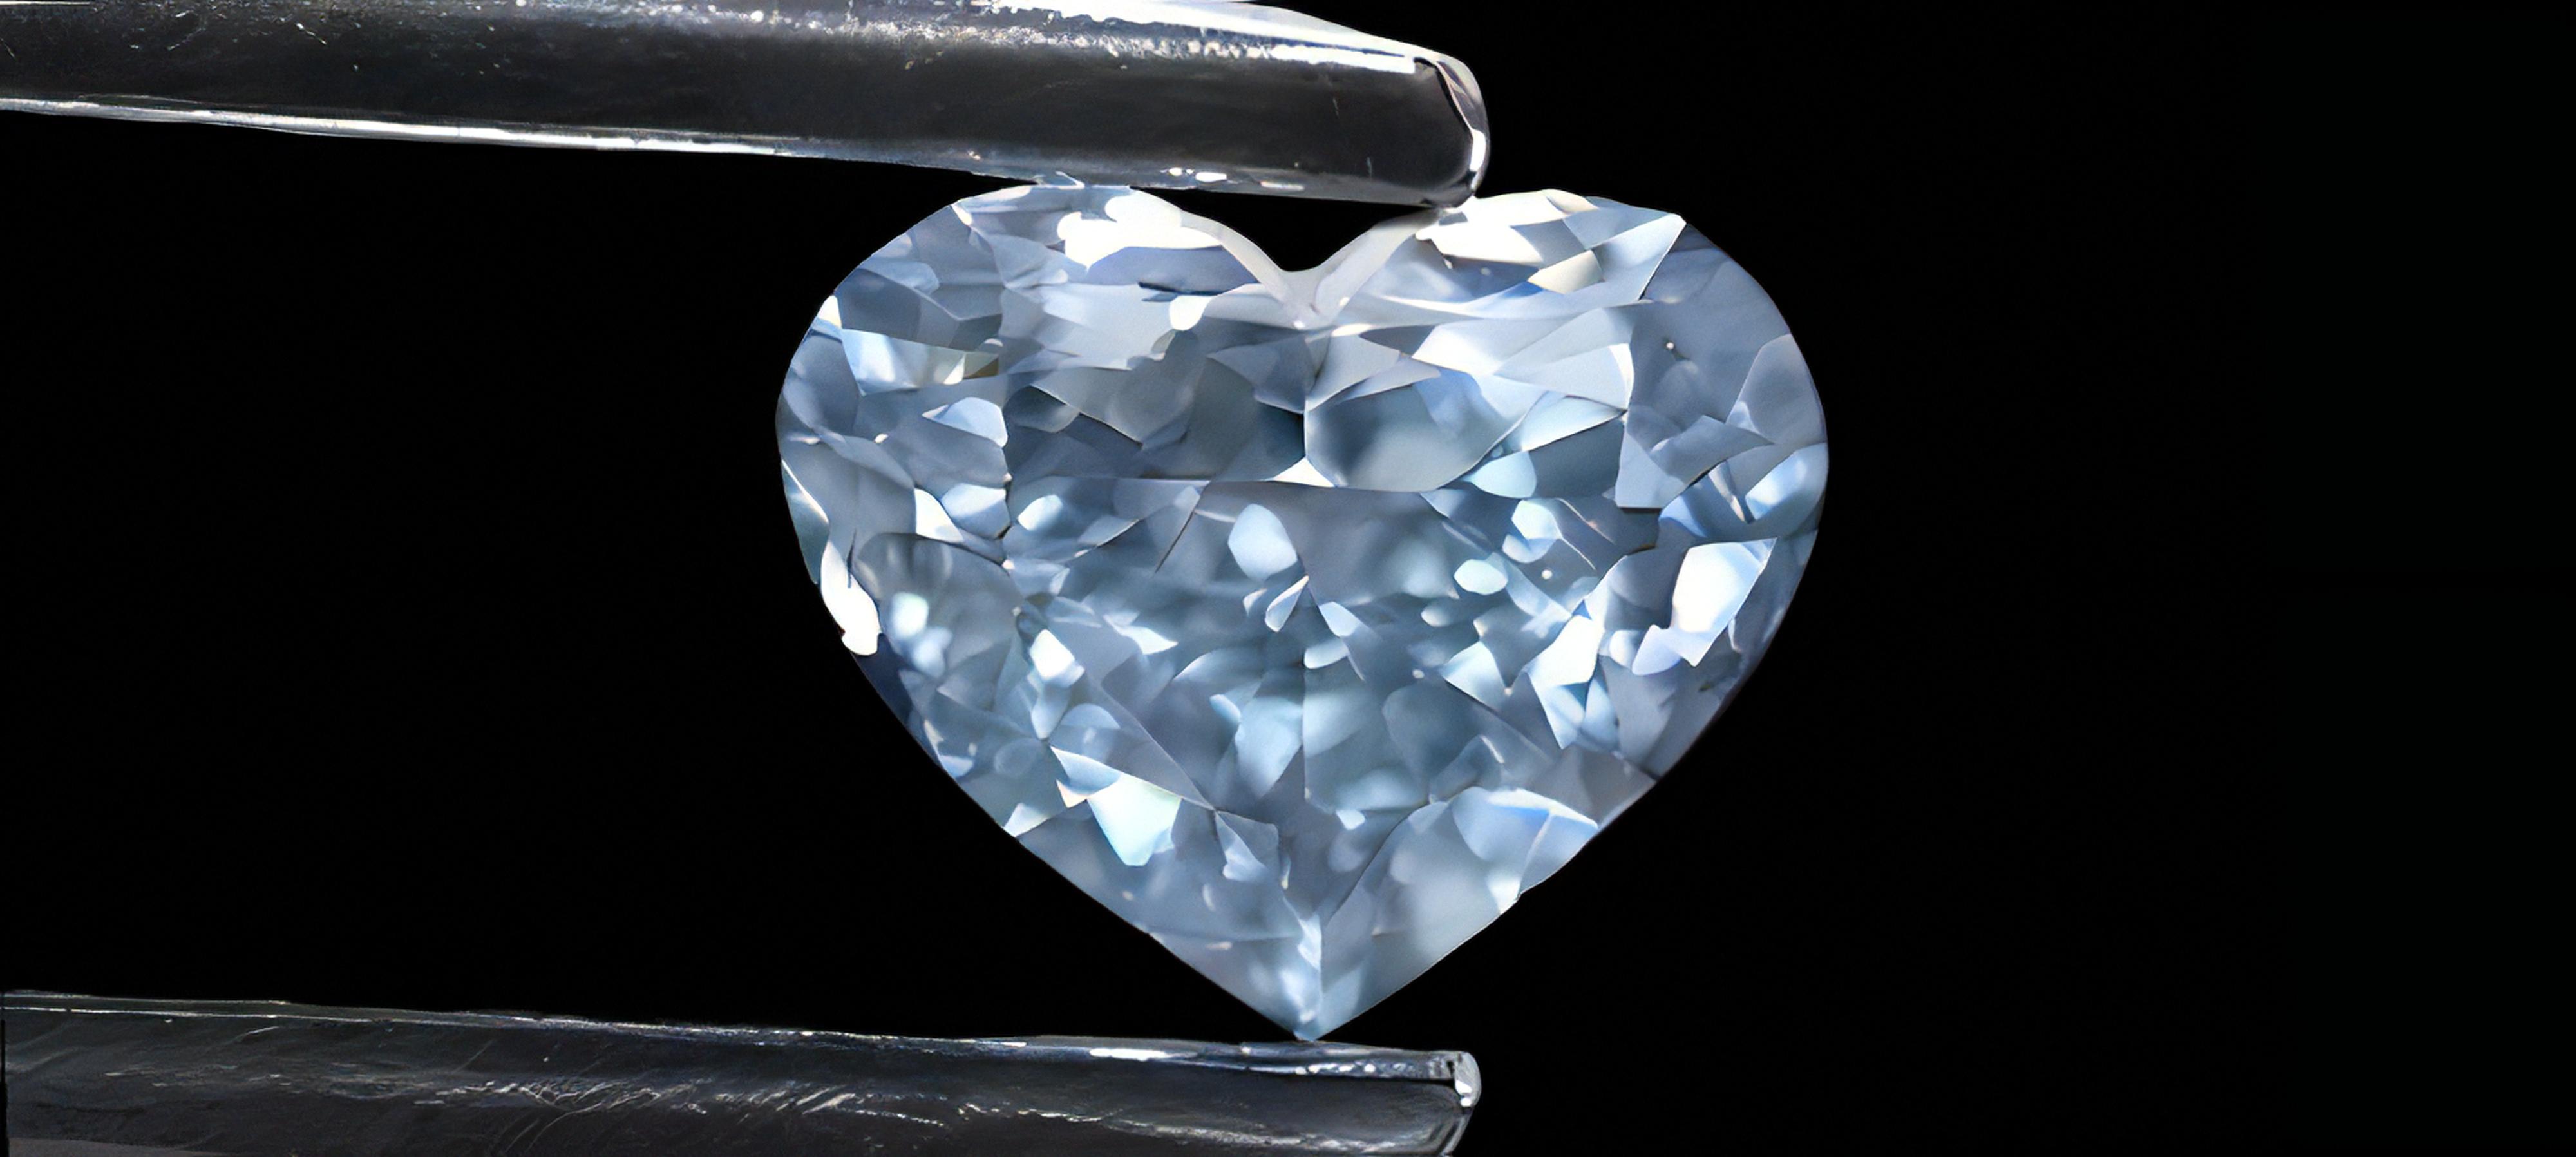 ブルーダイヤモンド、blue diamond, カラーダイヤモンド